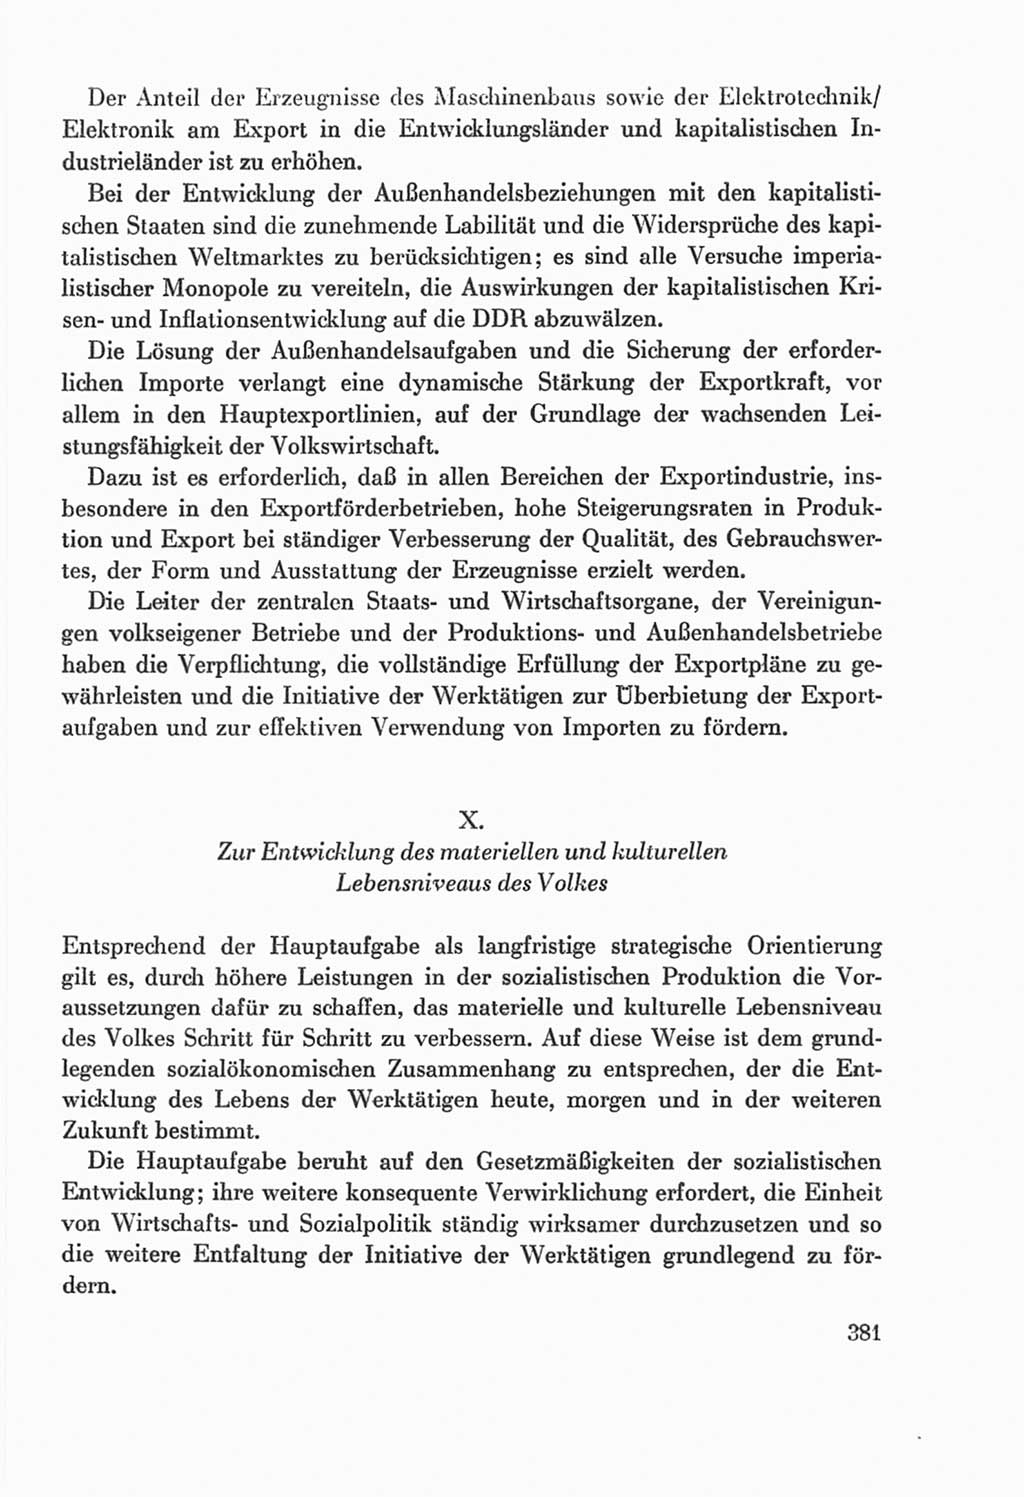 Protokoll der Verhandlungen des Ⅸ. Parteitages der Sozialistischen Einheitspartei Deutschlands (SED) [Deutsche Demokratische Republik (DDR)] 1976, Band 2, Seite 381 (Prot. Verh. Ⅸ. PT SED DDR 1976, Bd. 2, S. 381)